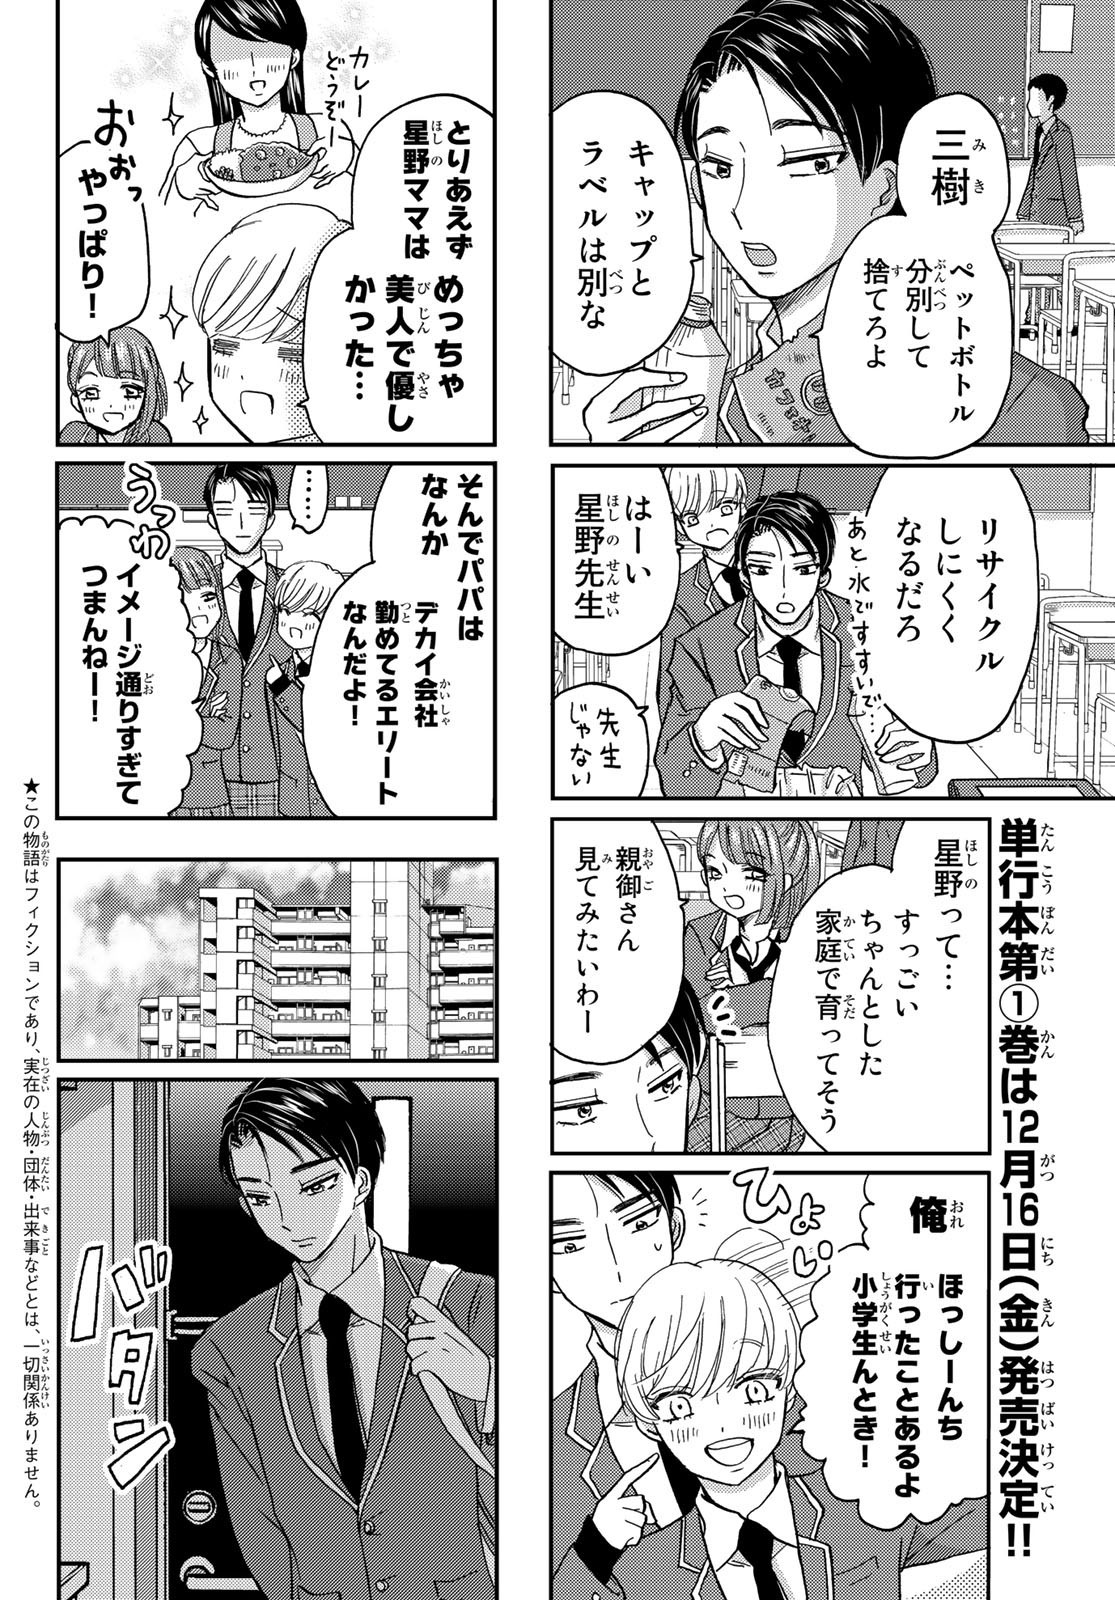 Hinata-san, Hoshino desu. - Chapter 005 - Page 2